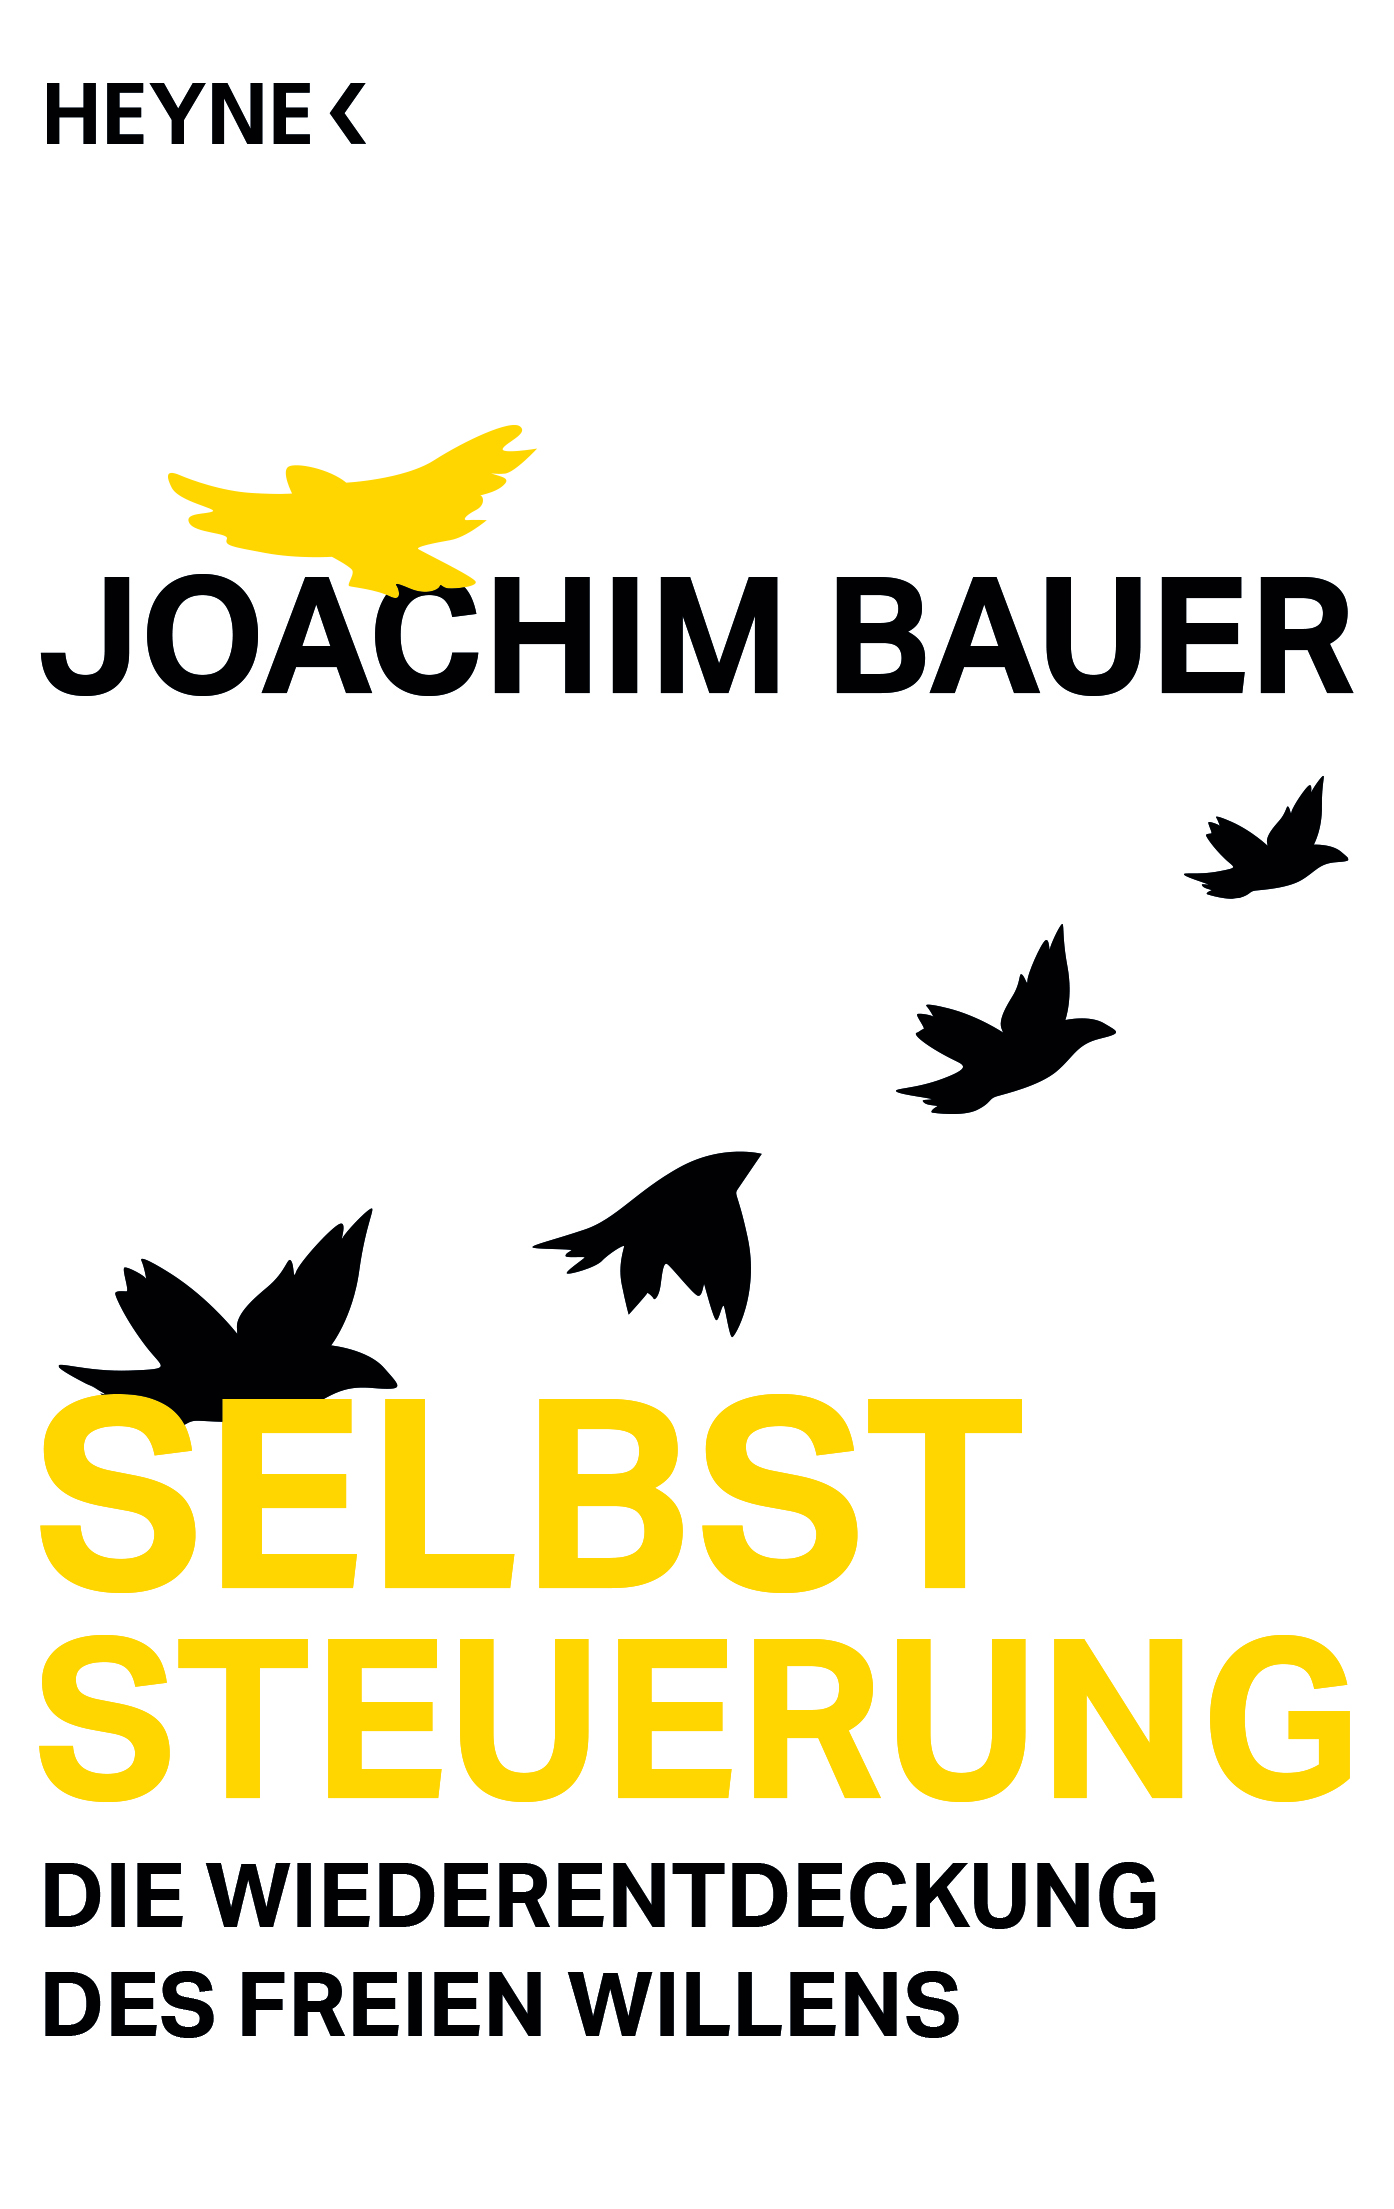 Joachim Bauer_Selbststeuerung